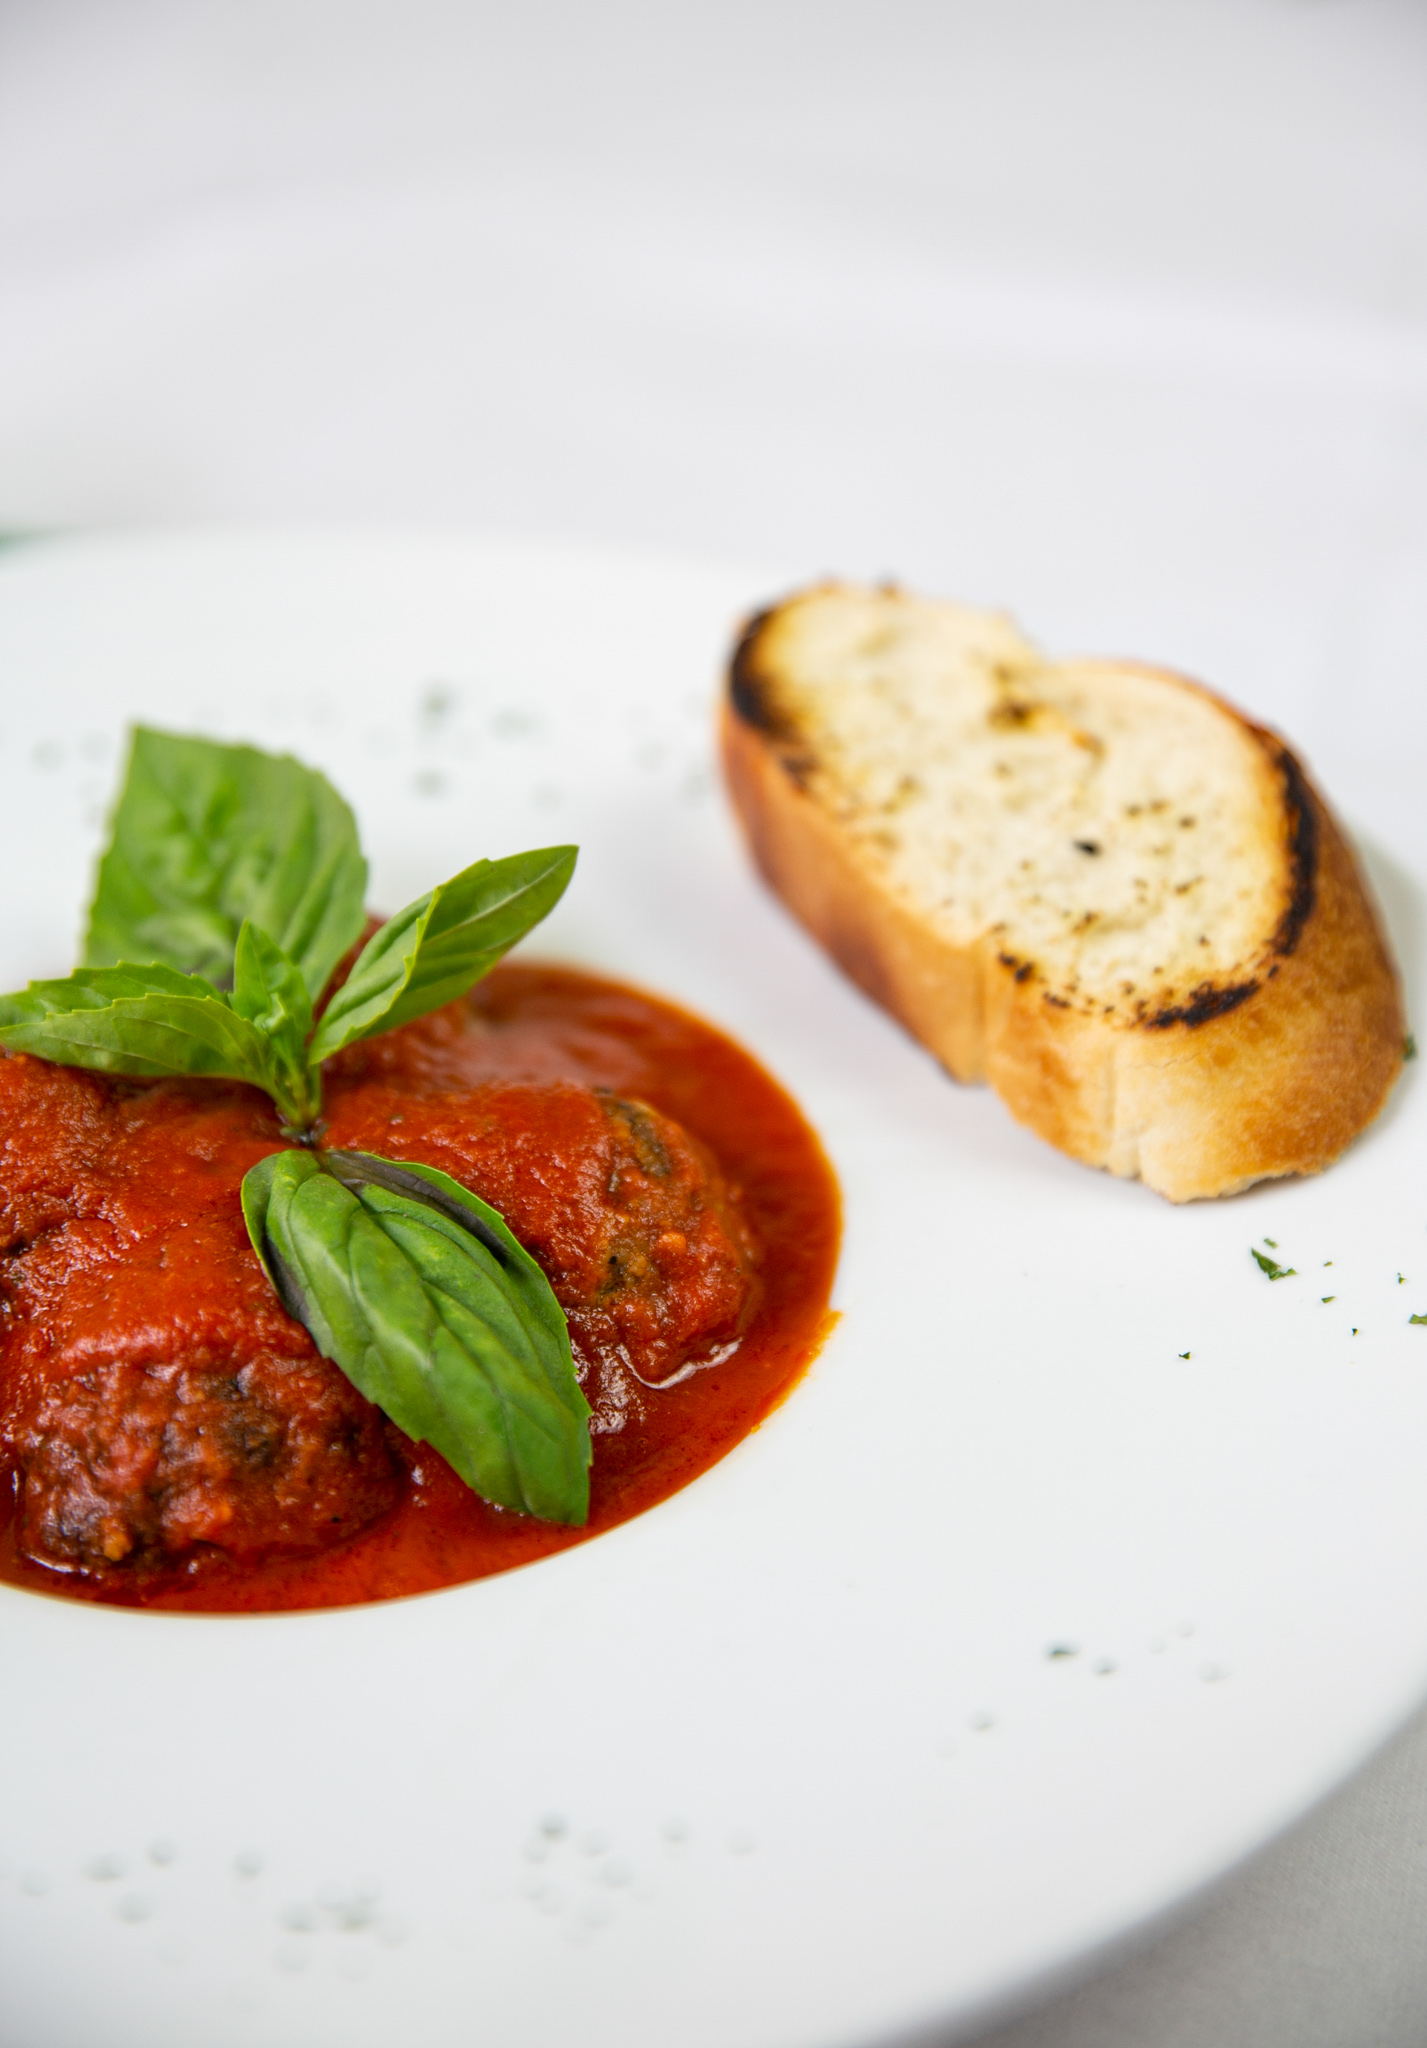 LA CAMPANIA CONTACT US ITALIAN AUTHENTIC CUISINE DELICIOUS ARUNDEL FOOD RESTAURANT FINE ITALIAN DINING LUNCH MENU WEST SUSSEX